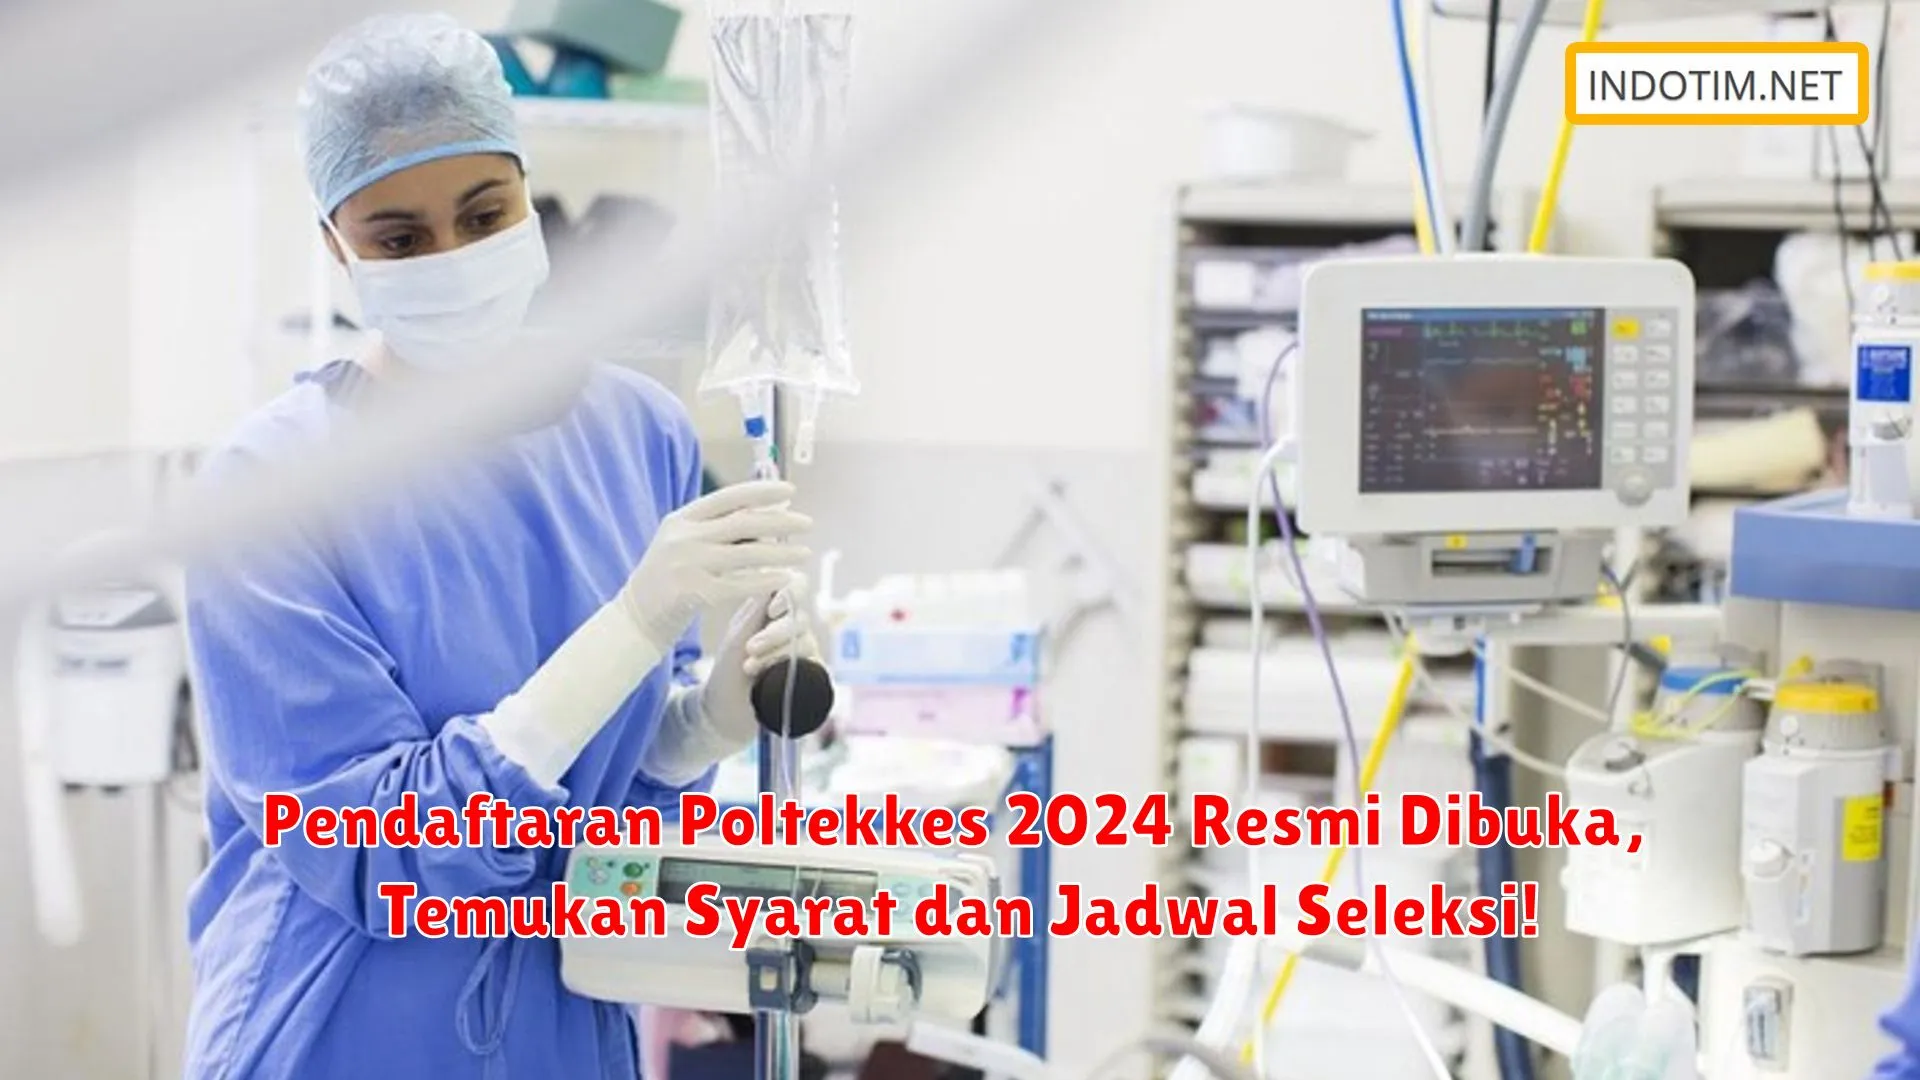 Pendaftaran Poltekkes 2024 Resmi Dibuka, Temukan Syarat dan Jadwal Seleksi!